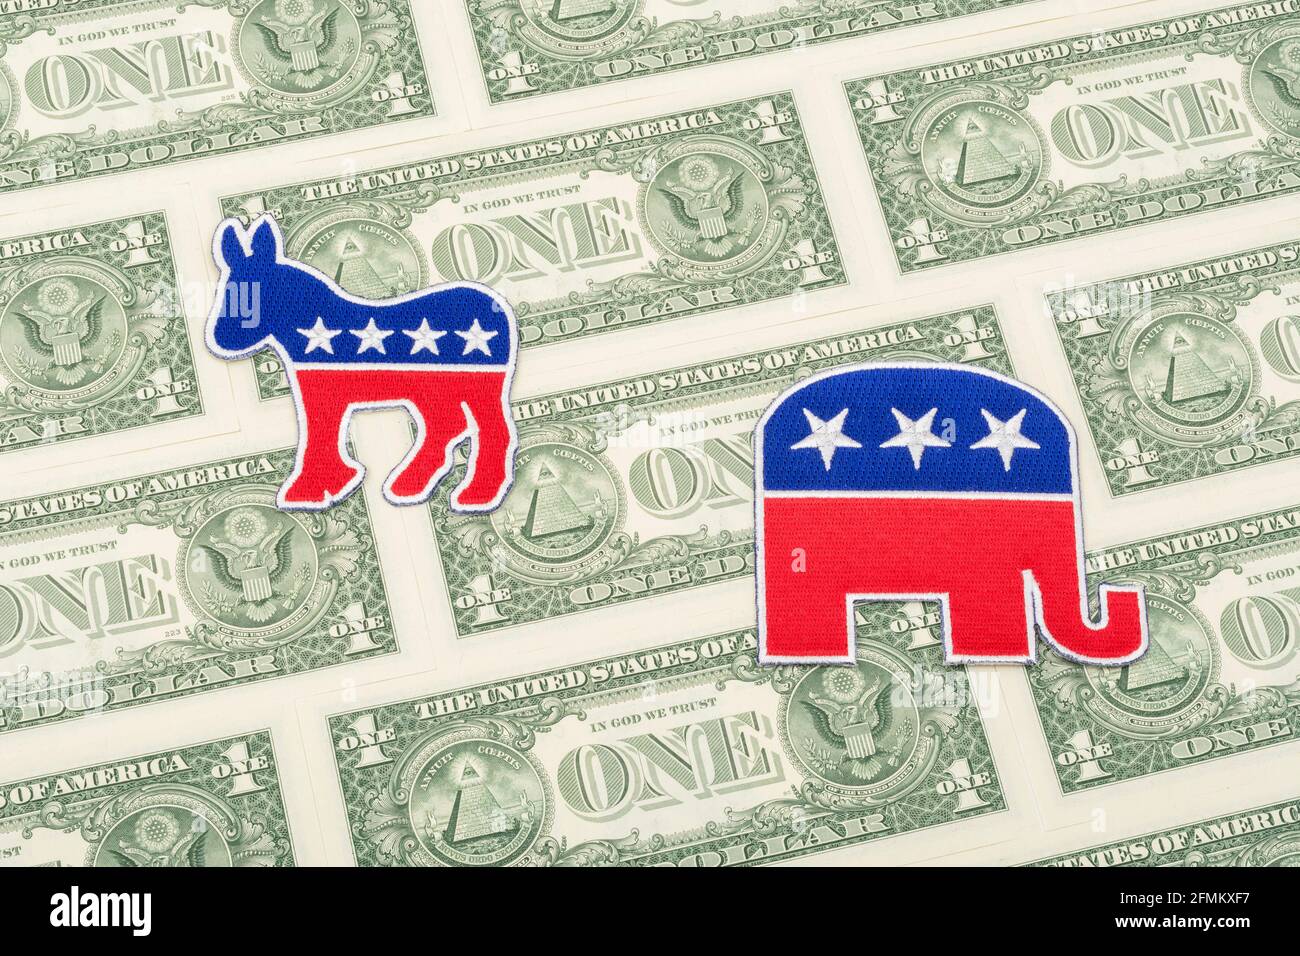 Badges avec logo éléphant républicain et âne démocrate avec billets de 1 dollar US. Pour les collectes de fonds politiques et PACS aux États-Unis - GOP ou DNC. Banque D'Images